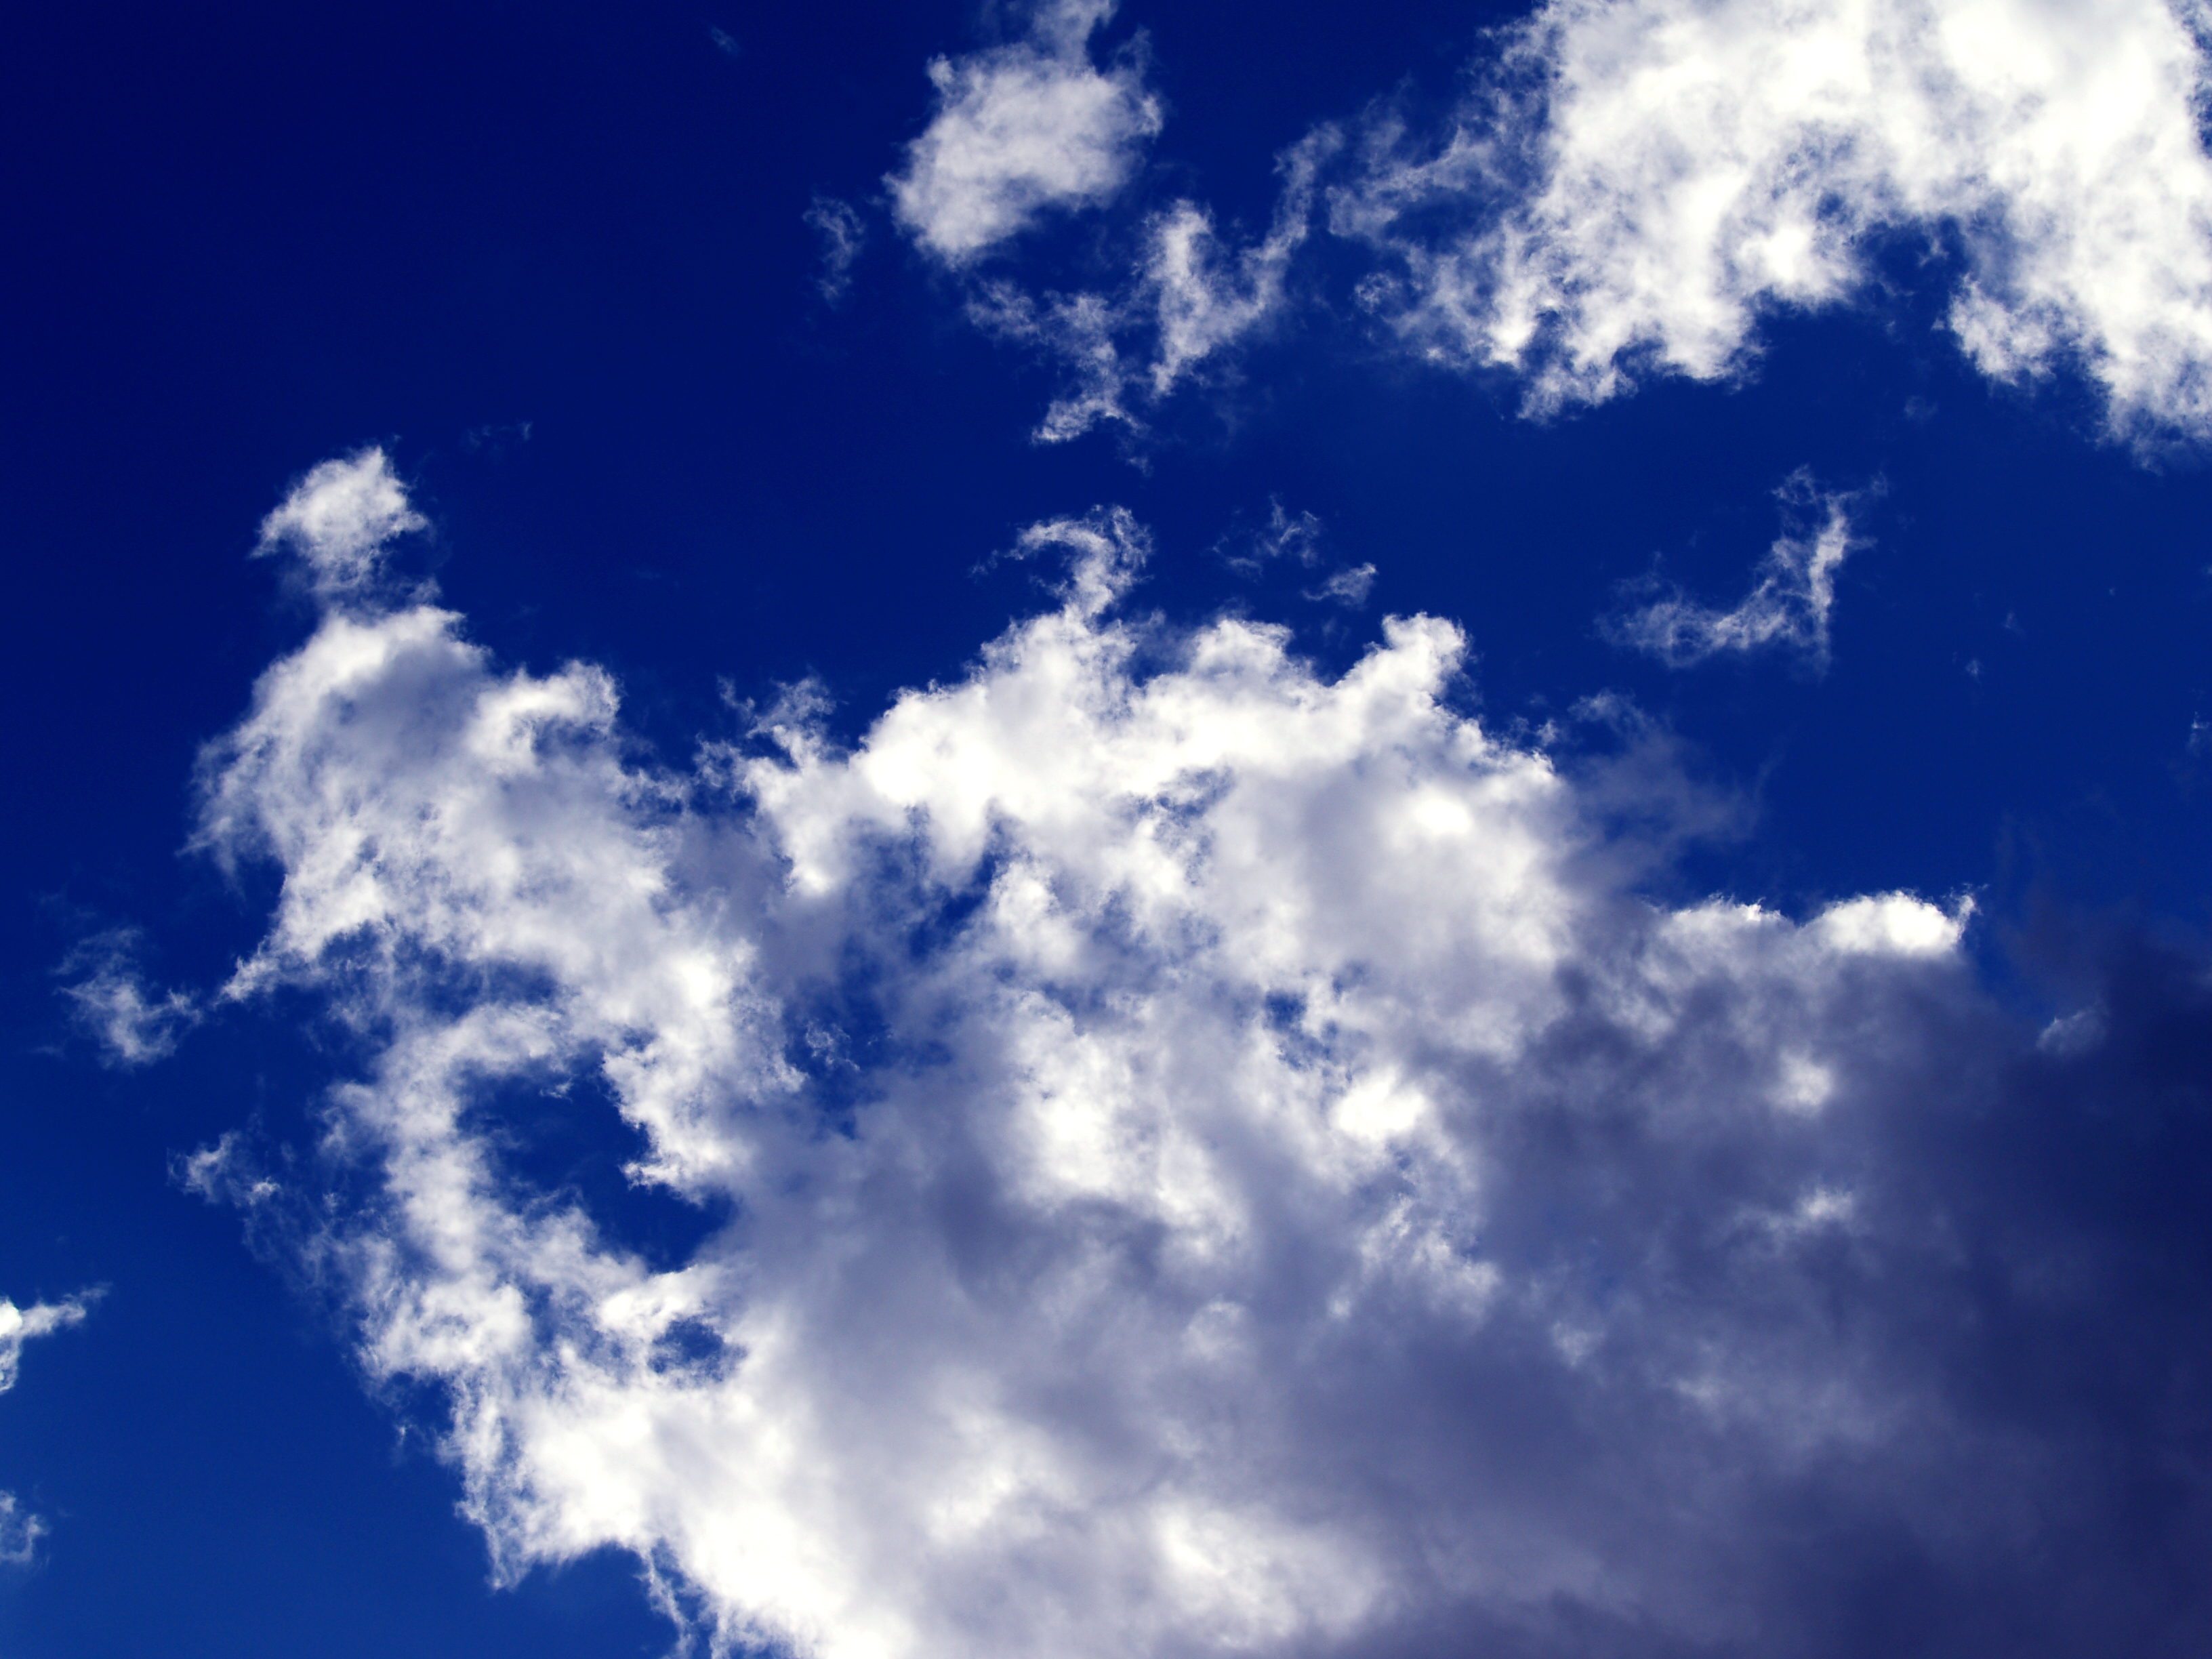 Deep blue cloudy sky, Air, Blue, Clouds, Cloudy, HQ Photo